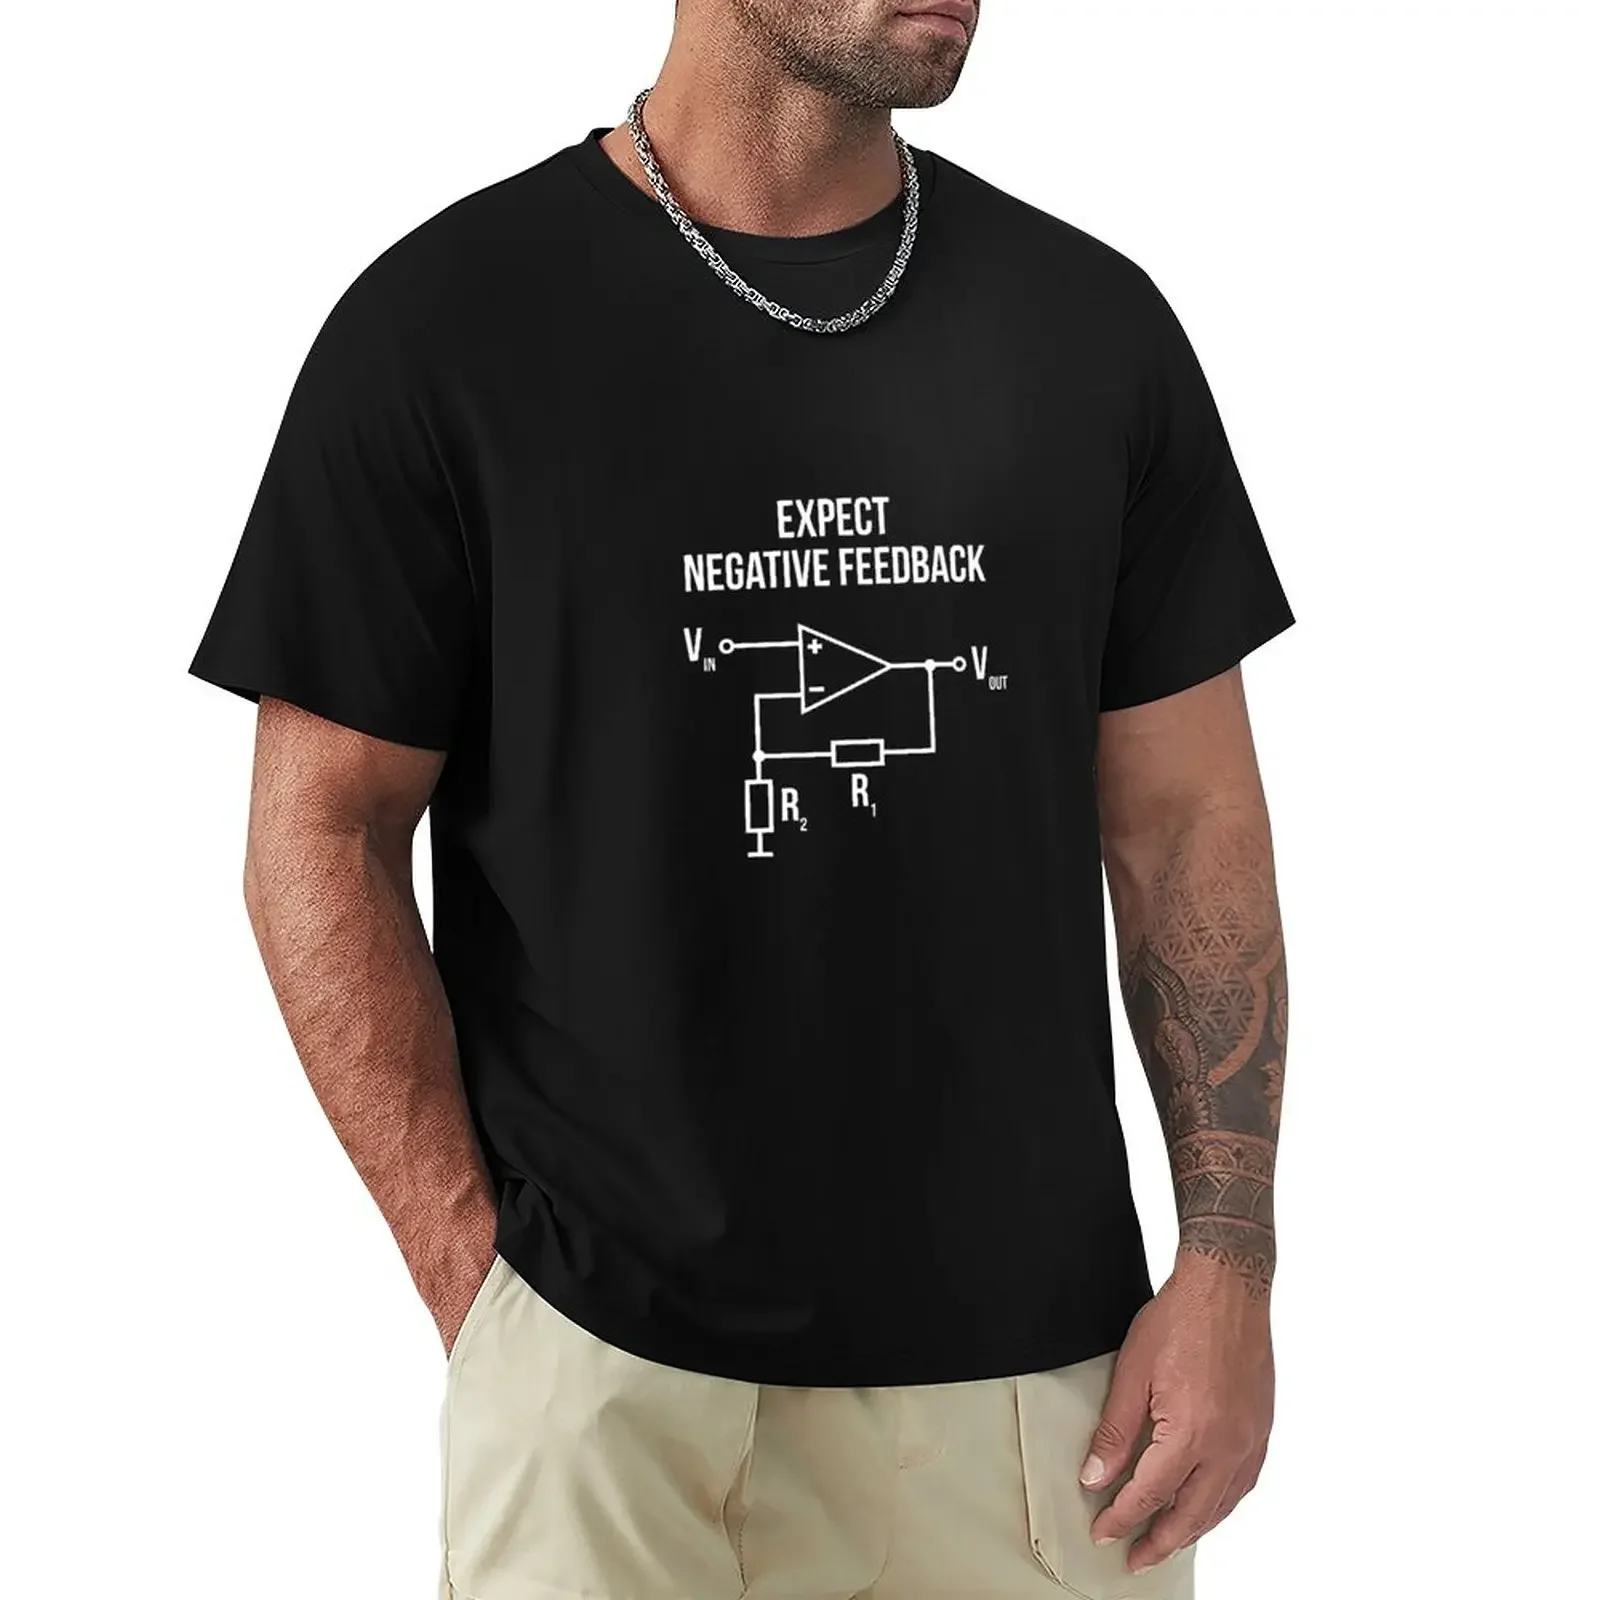 

Футболка с рисунком электрика, инженера оп, отрицательная яркость, Винтажная футболка, мужские футболки с графическим рисунком, футболки в стиле хип-хоп